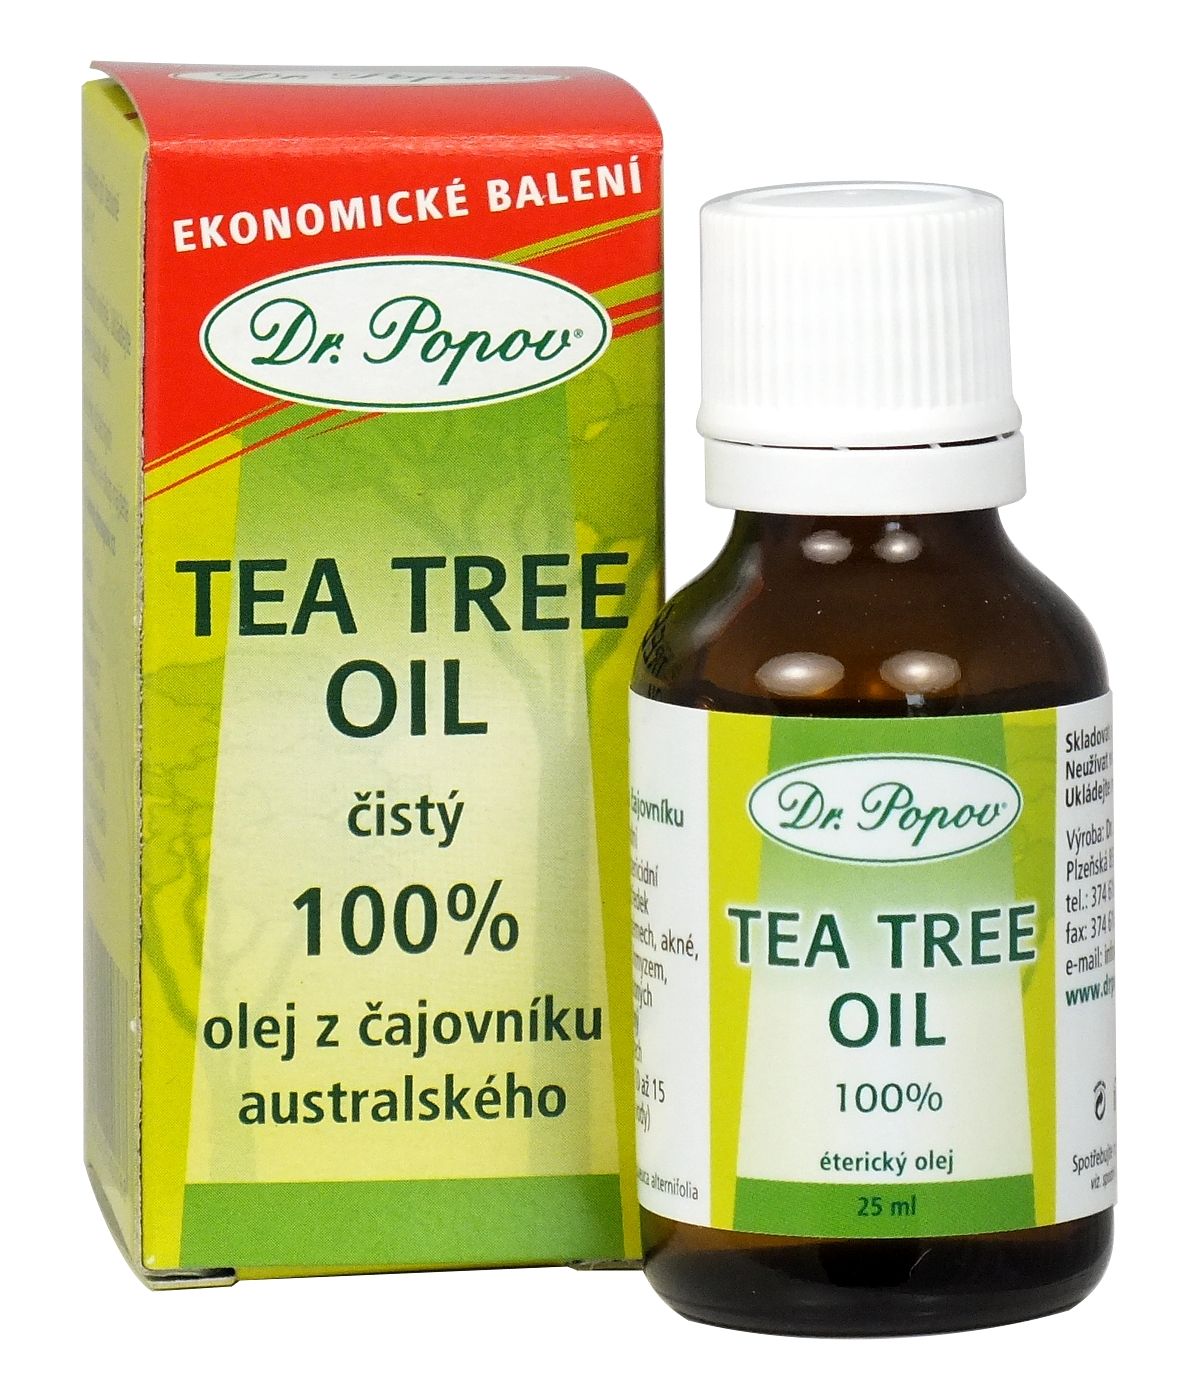 Dr. Popov Tea Tree Oil 25 ml Dr. Popov